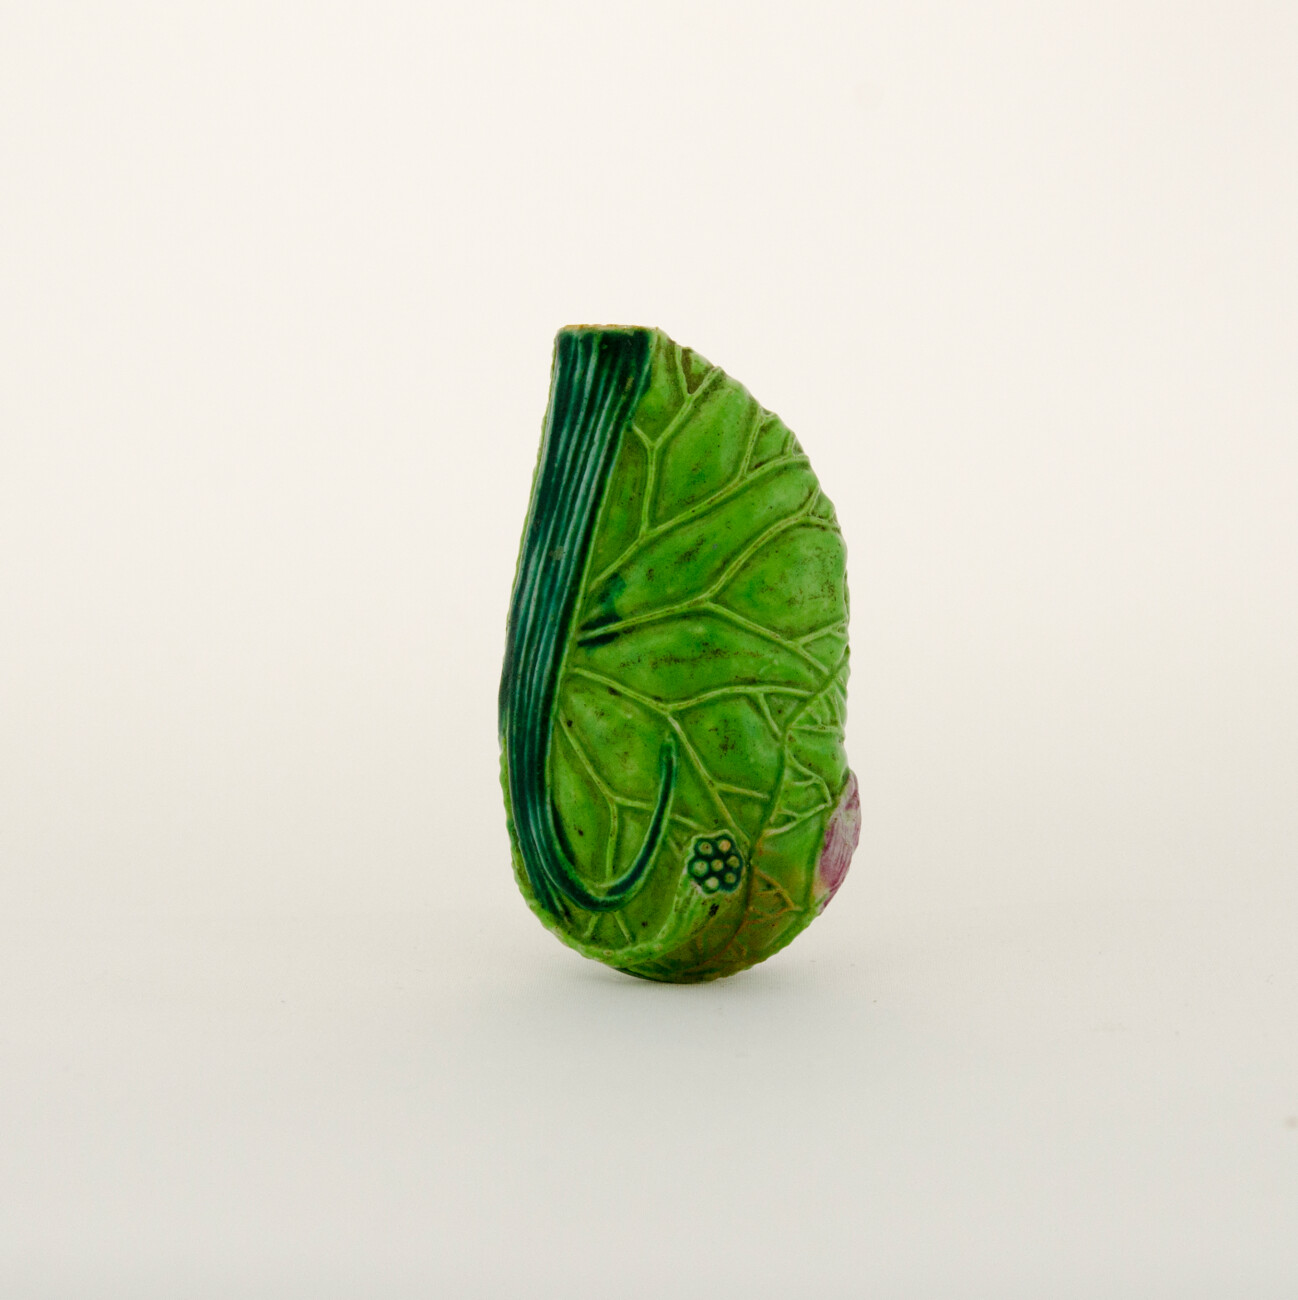 Porcelain snuff bottle green color and designed like a leaf